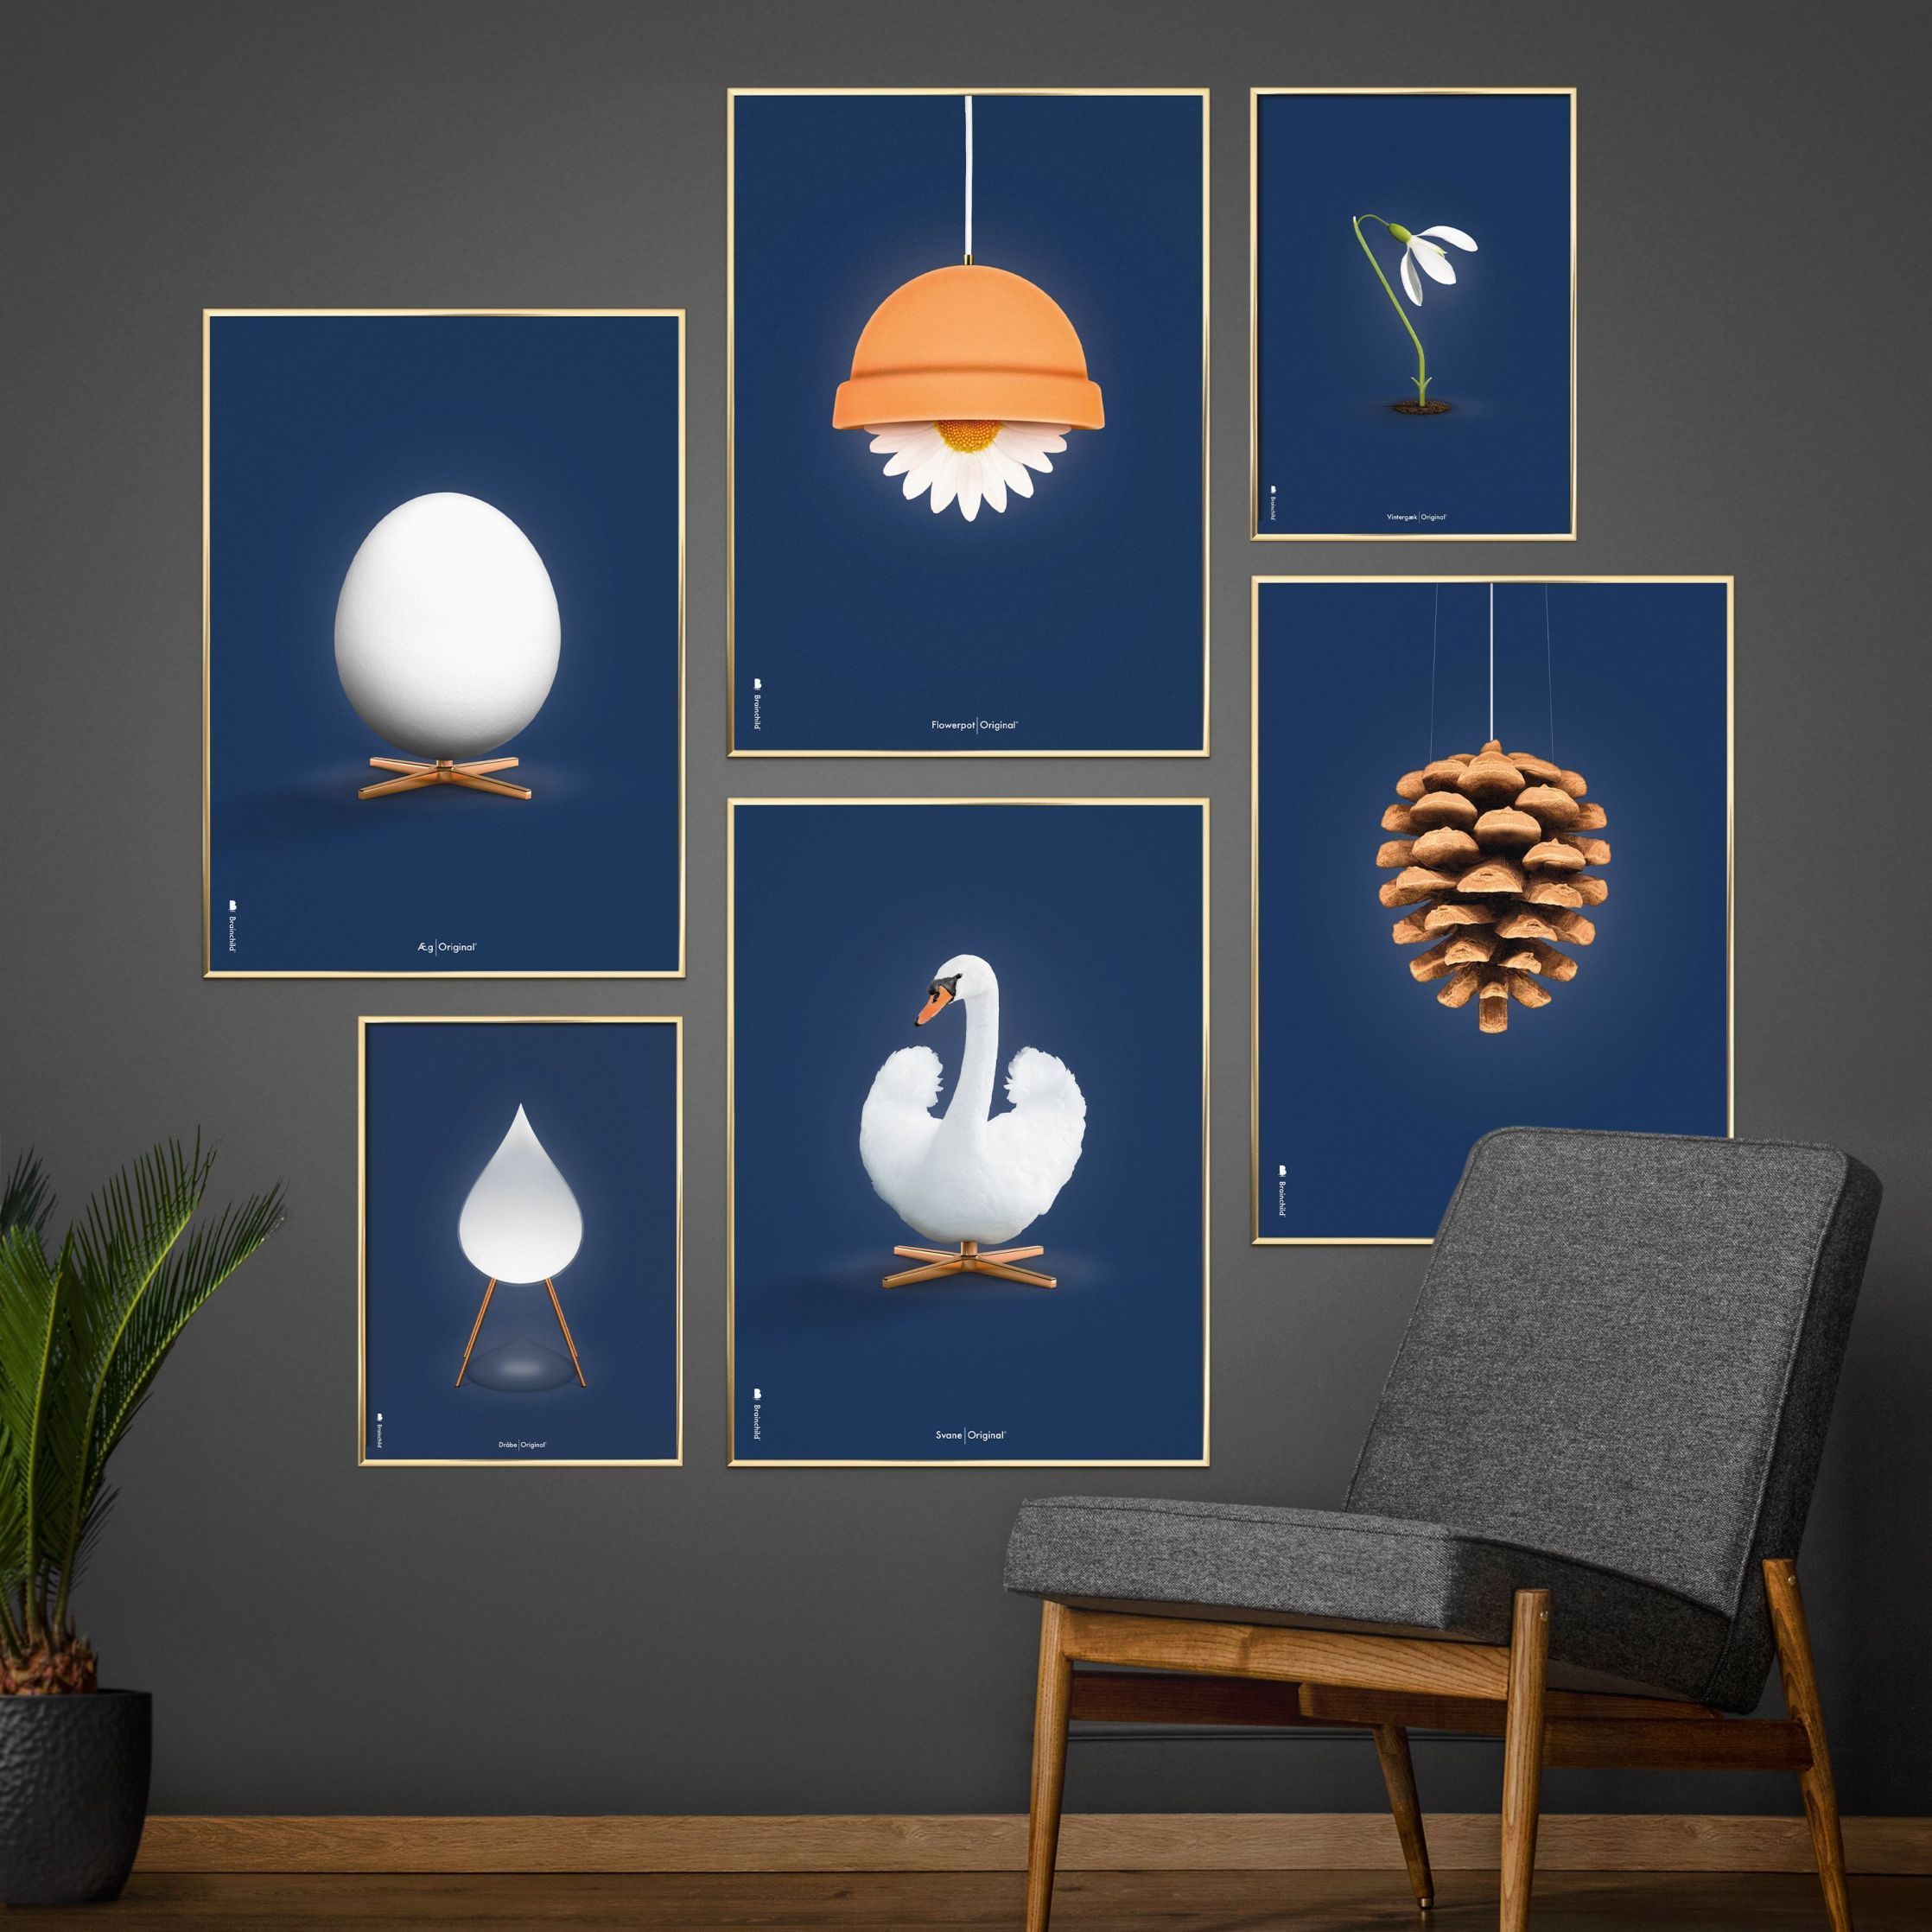 Brainchild Egg Classic Poster, Frame Made Of Light Wood 30x40 Cm, Dark Blue Background